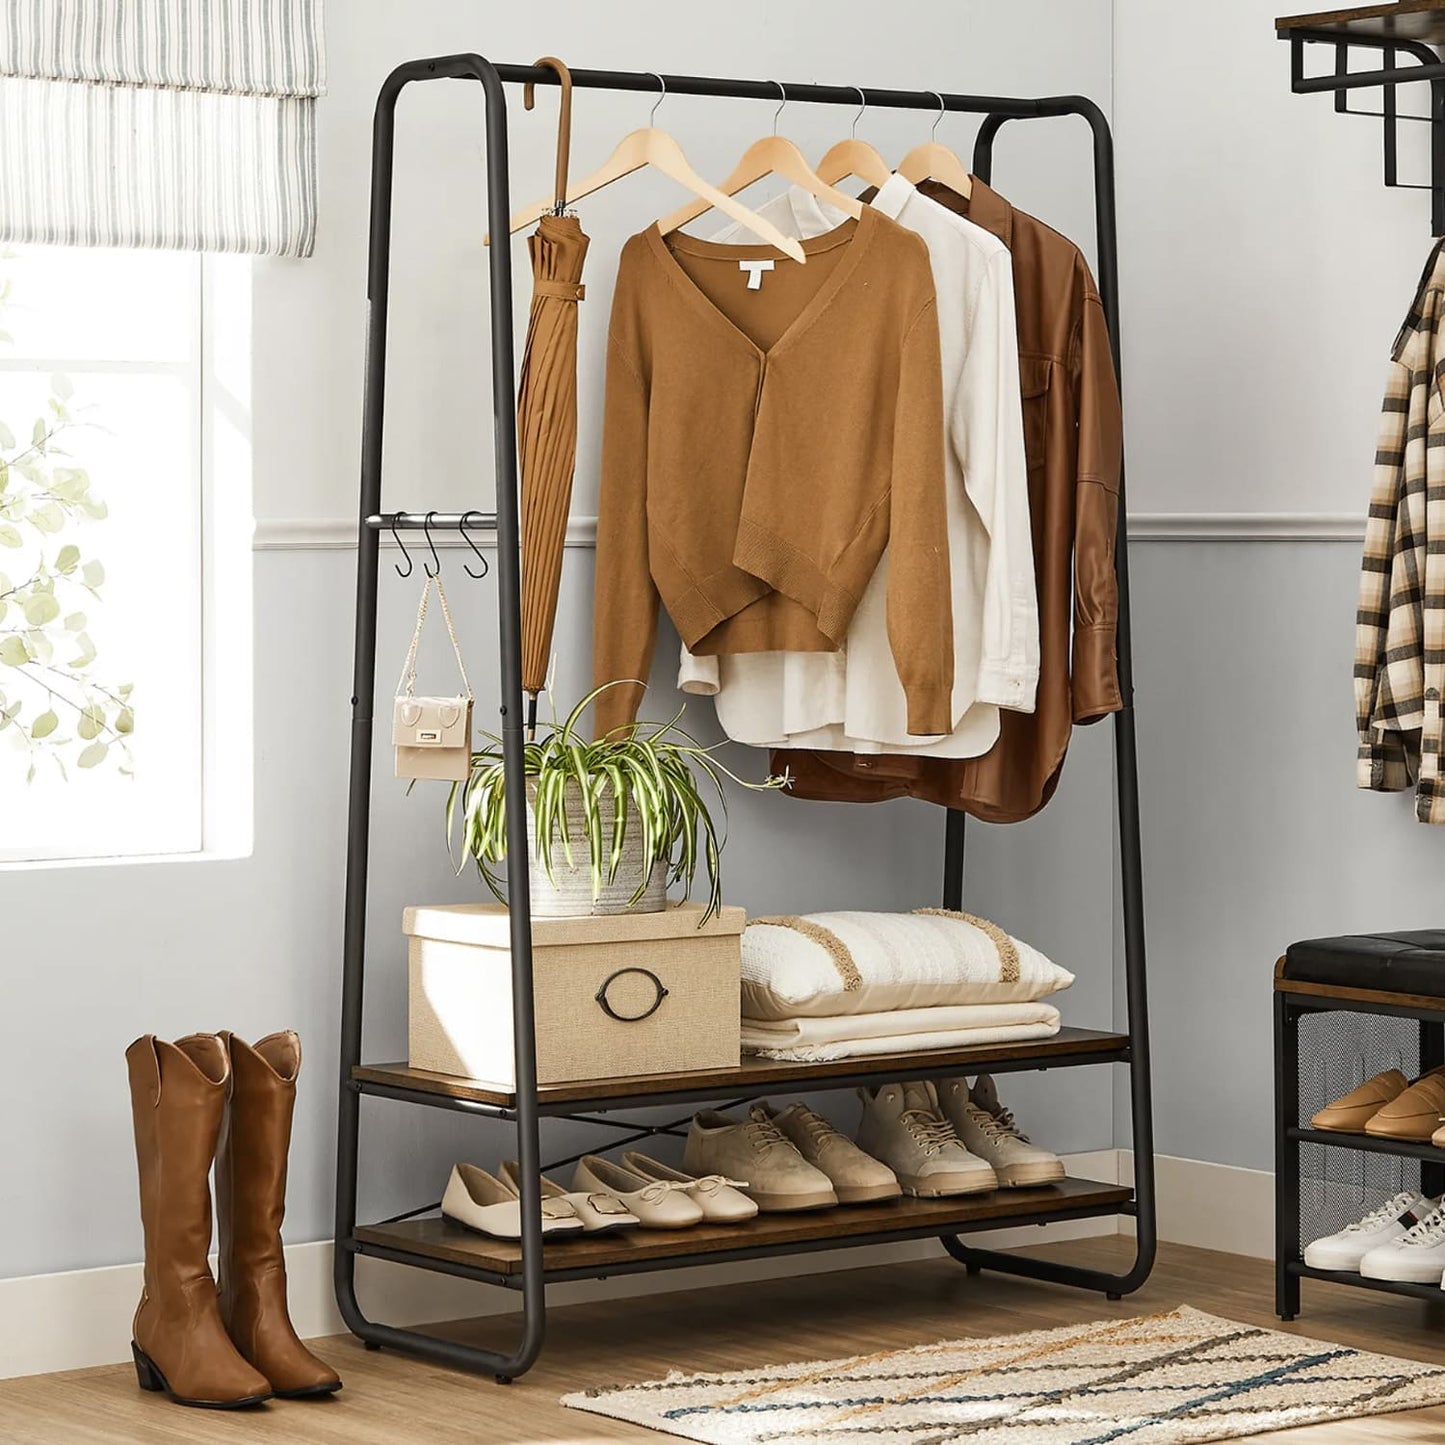 Burro para ropa estilo nórdico - Batlló Concept - Diseño de muebles